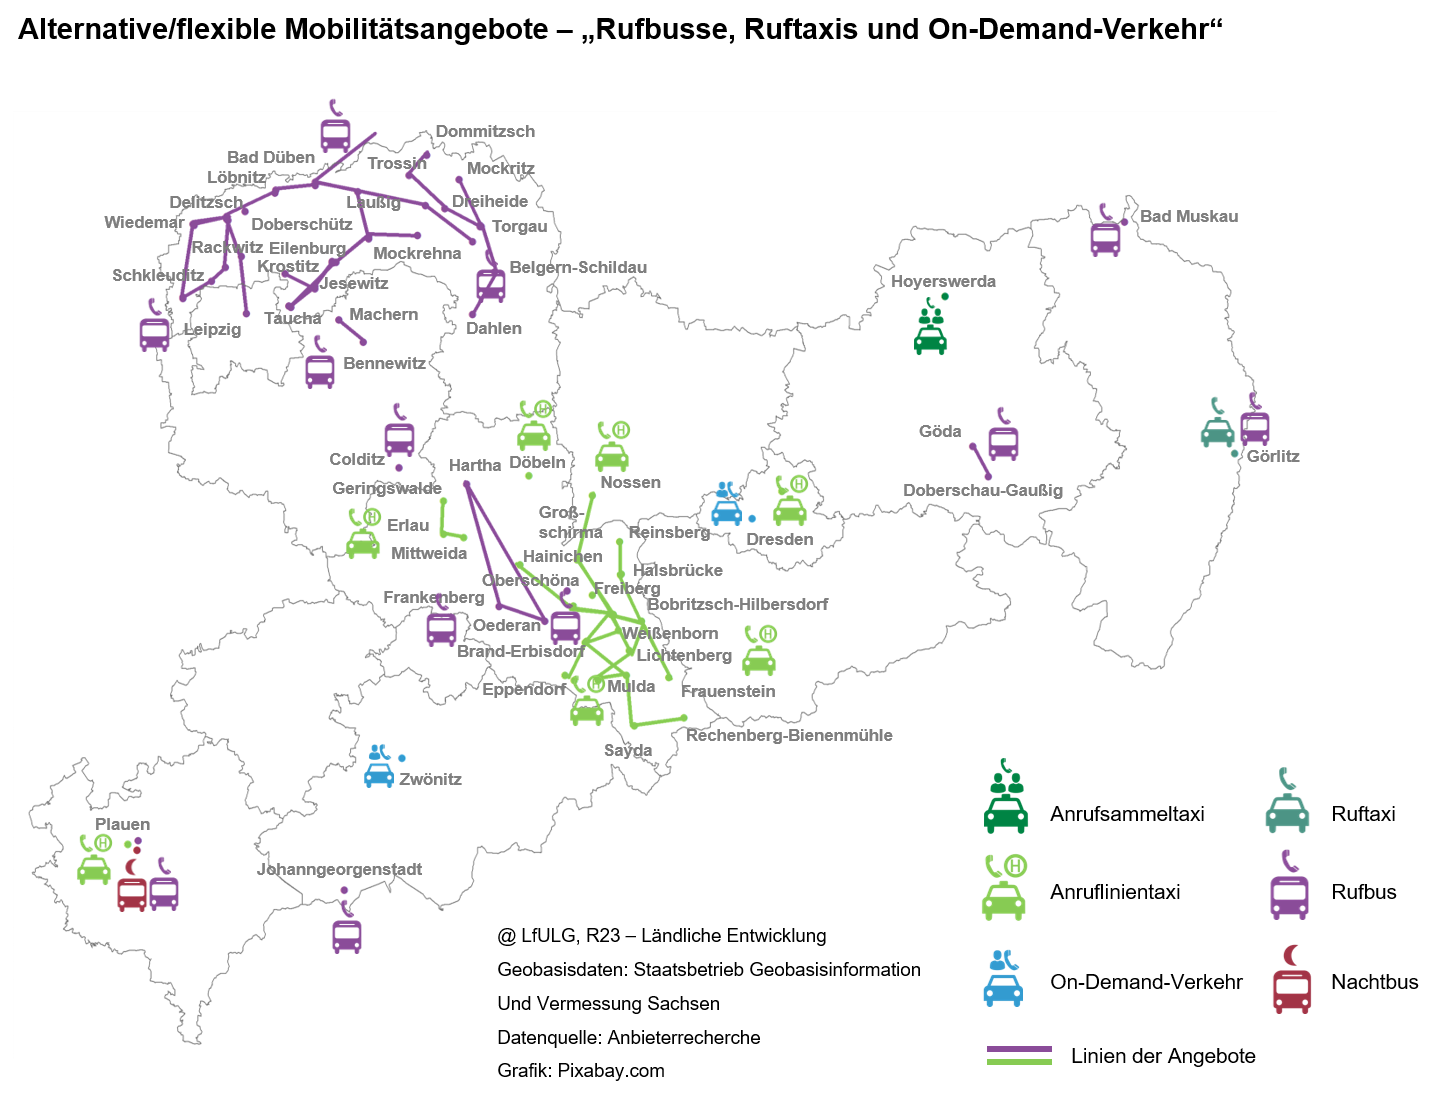 Sachsenkarte mit der Lage der bedarfsorientierten ÖPNV-Angebote mit verschiedenen Symbolen für Rufbusse, Ruftaxis und On-Demand-Verkehr